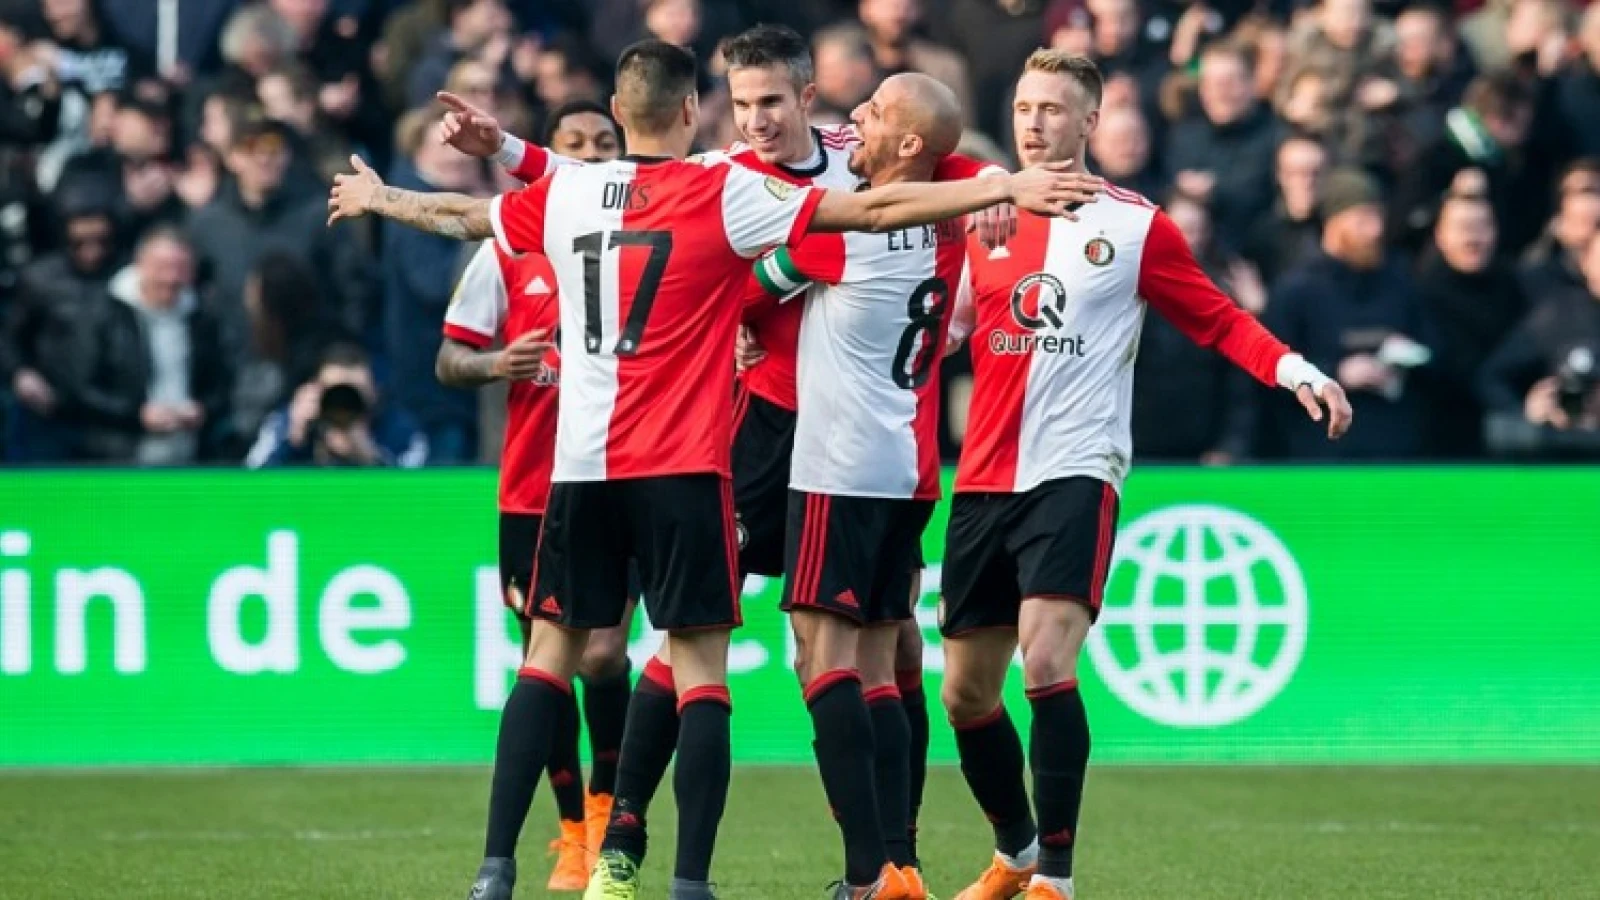 OPSTELLING | Feyenoord in opvallende line-up, verrassende basisplaatsen op het middenveld